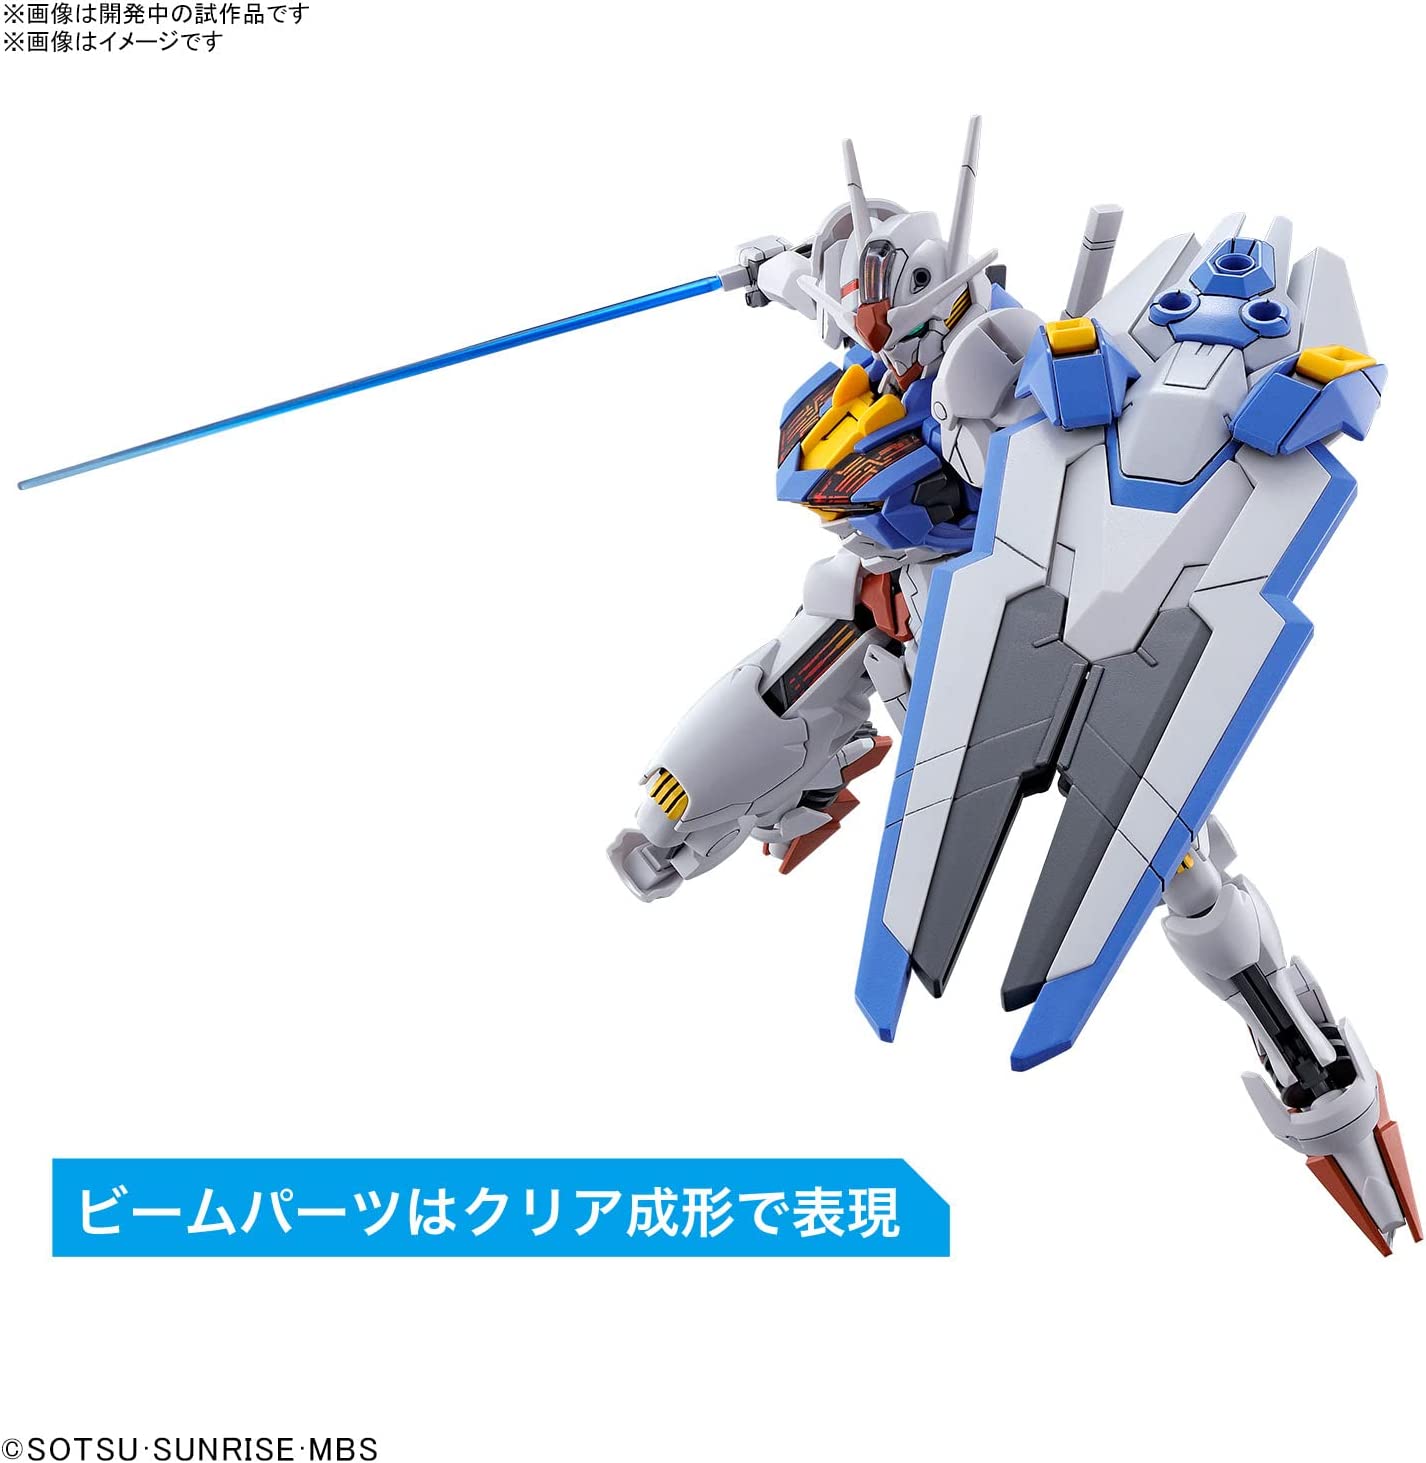 #03 Gundam Aerial "La bruja de Mercury", Kit de modelo Bandai Hobby HG 1/144